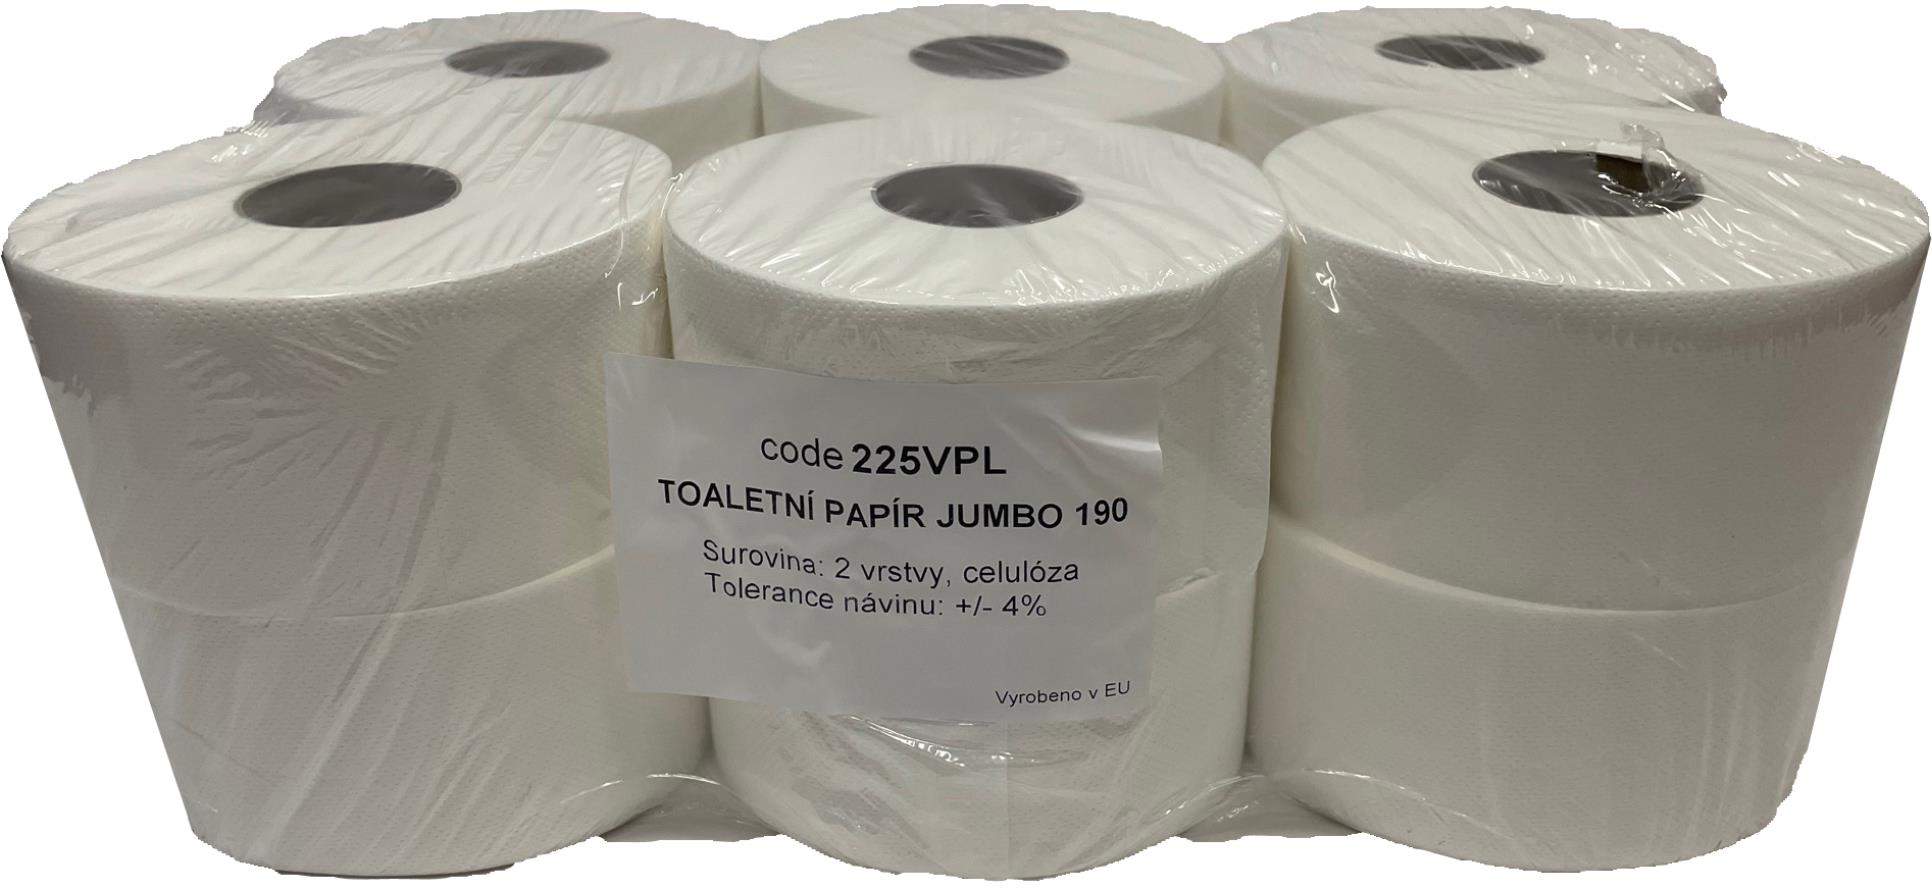 Toaletní papír Jumbo, dvouvrstvý, celuloza, 12 rolí